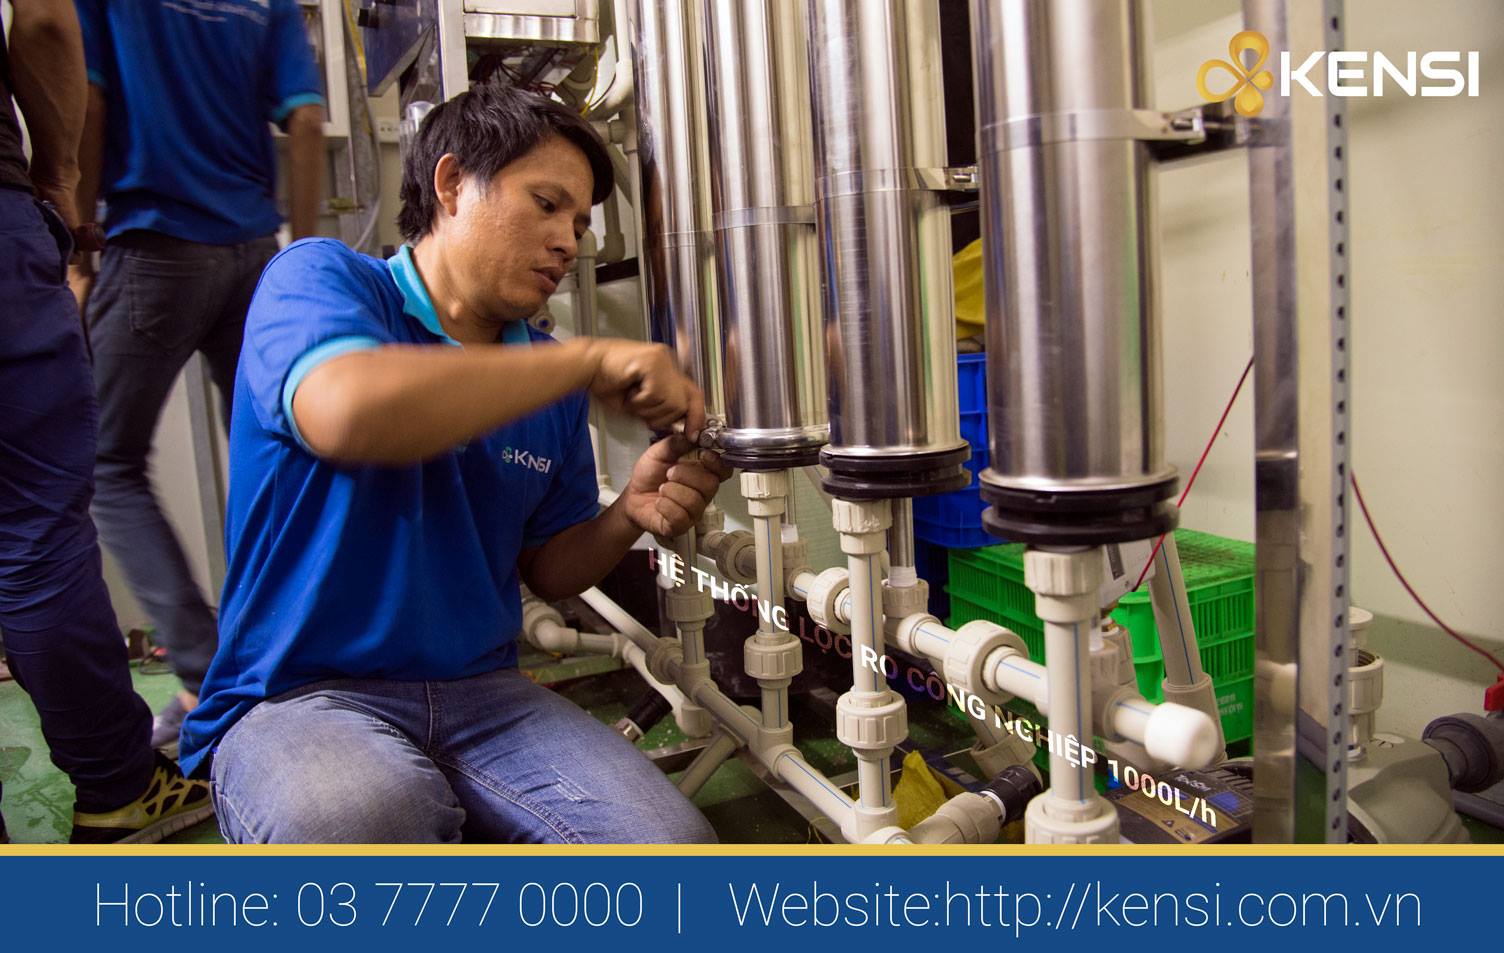 Tekcom thi công lắp đặt hệ thống lọc nước công nghiệp 1000l/h